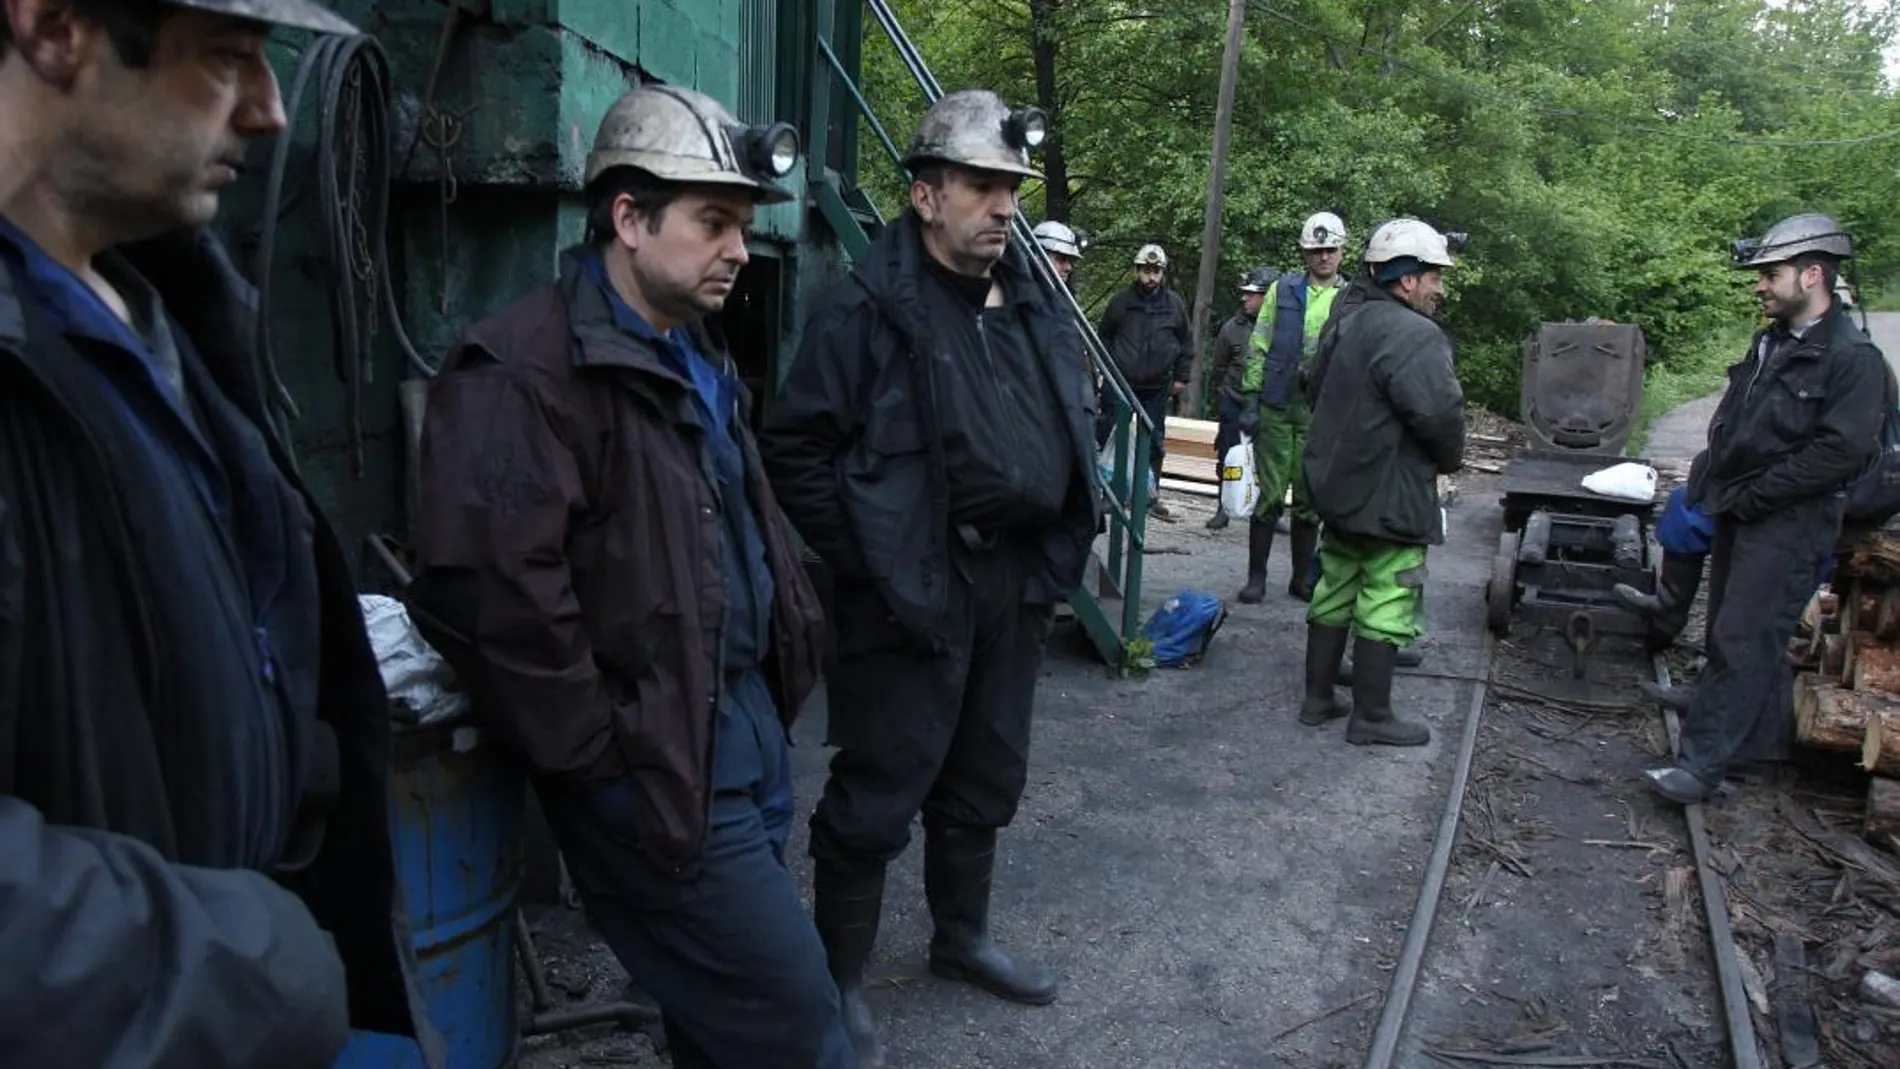 Los mineros en la mina del pozo Casares en Tremor de Arriba (León), una de las últimas en cerrar, son algunas de las personas que se podrán beneficiar de este apoyo para montar su propio negocio